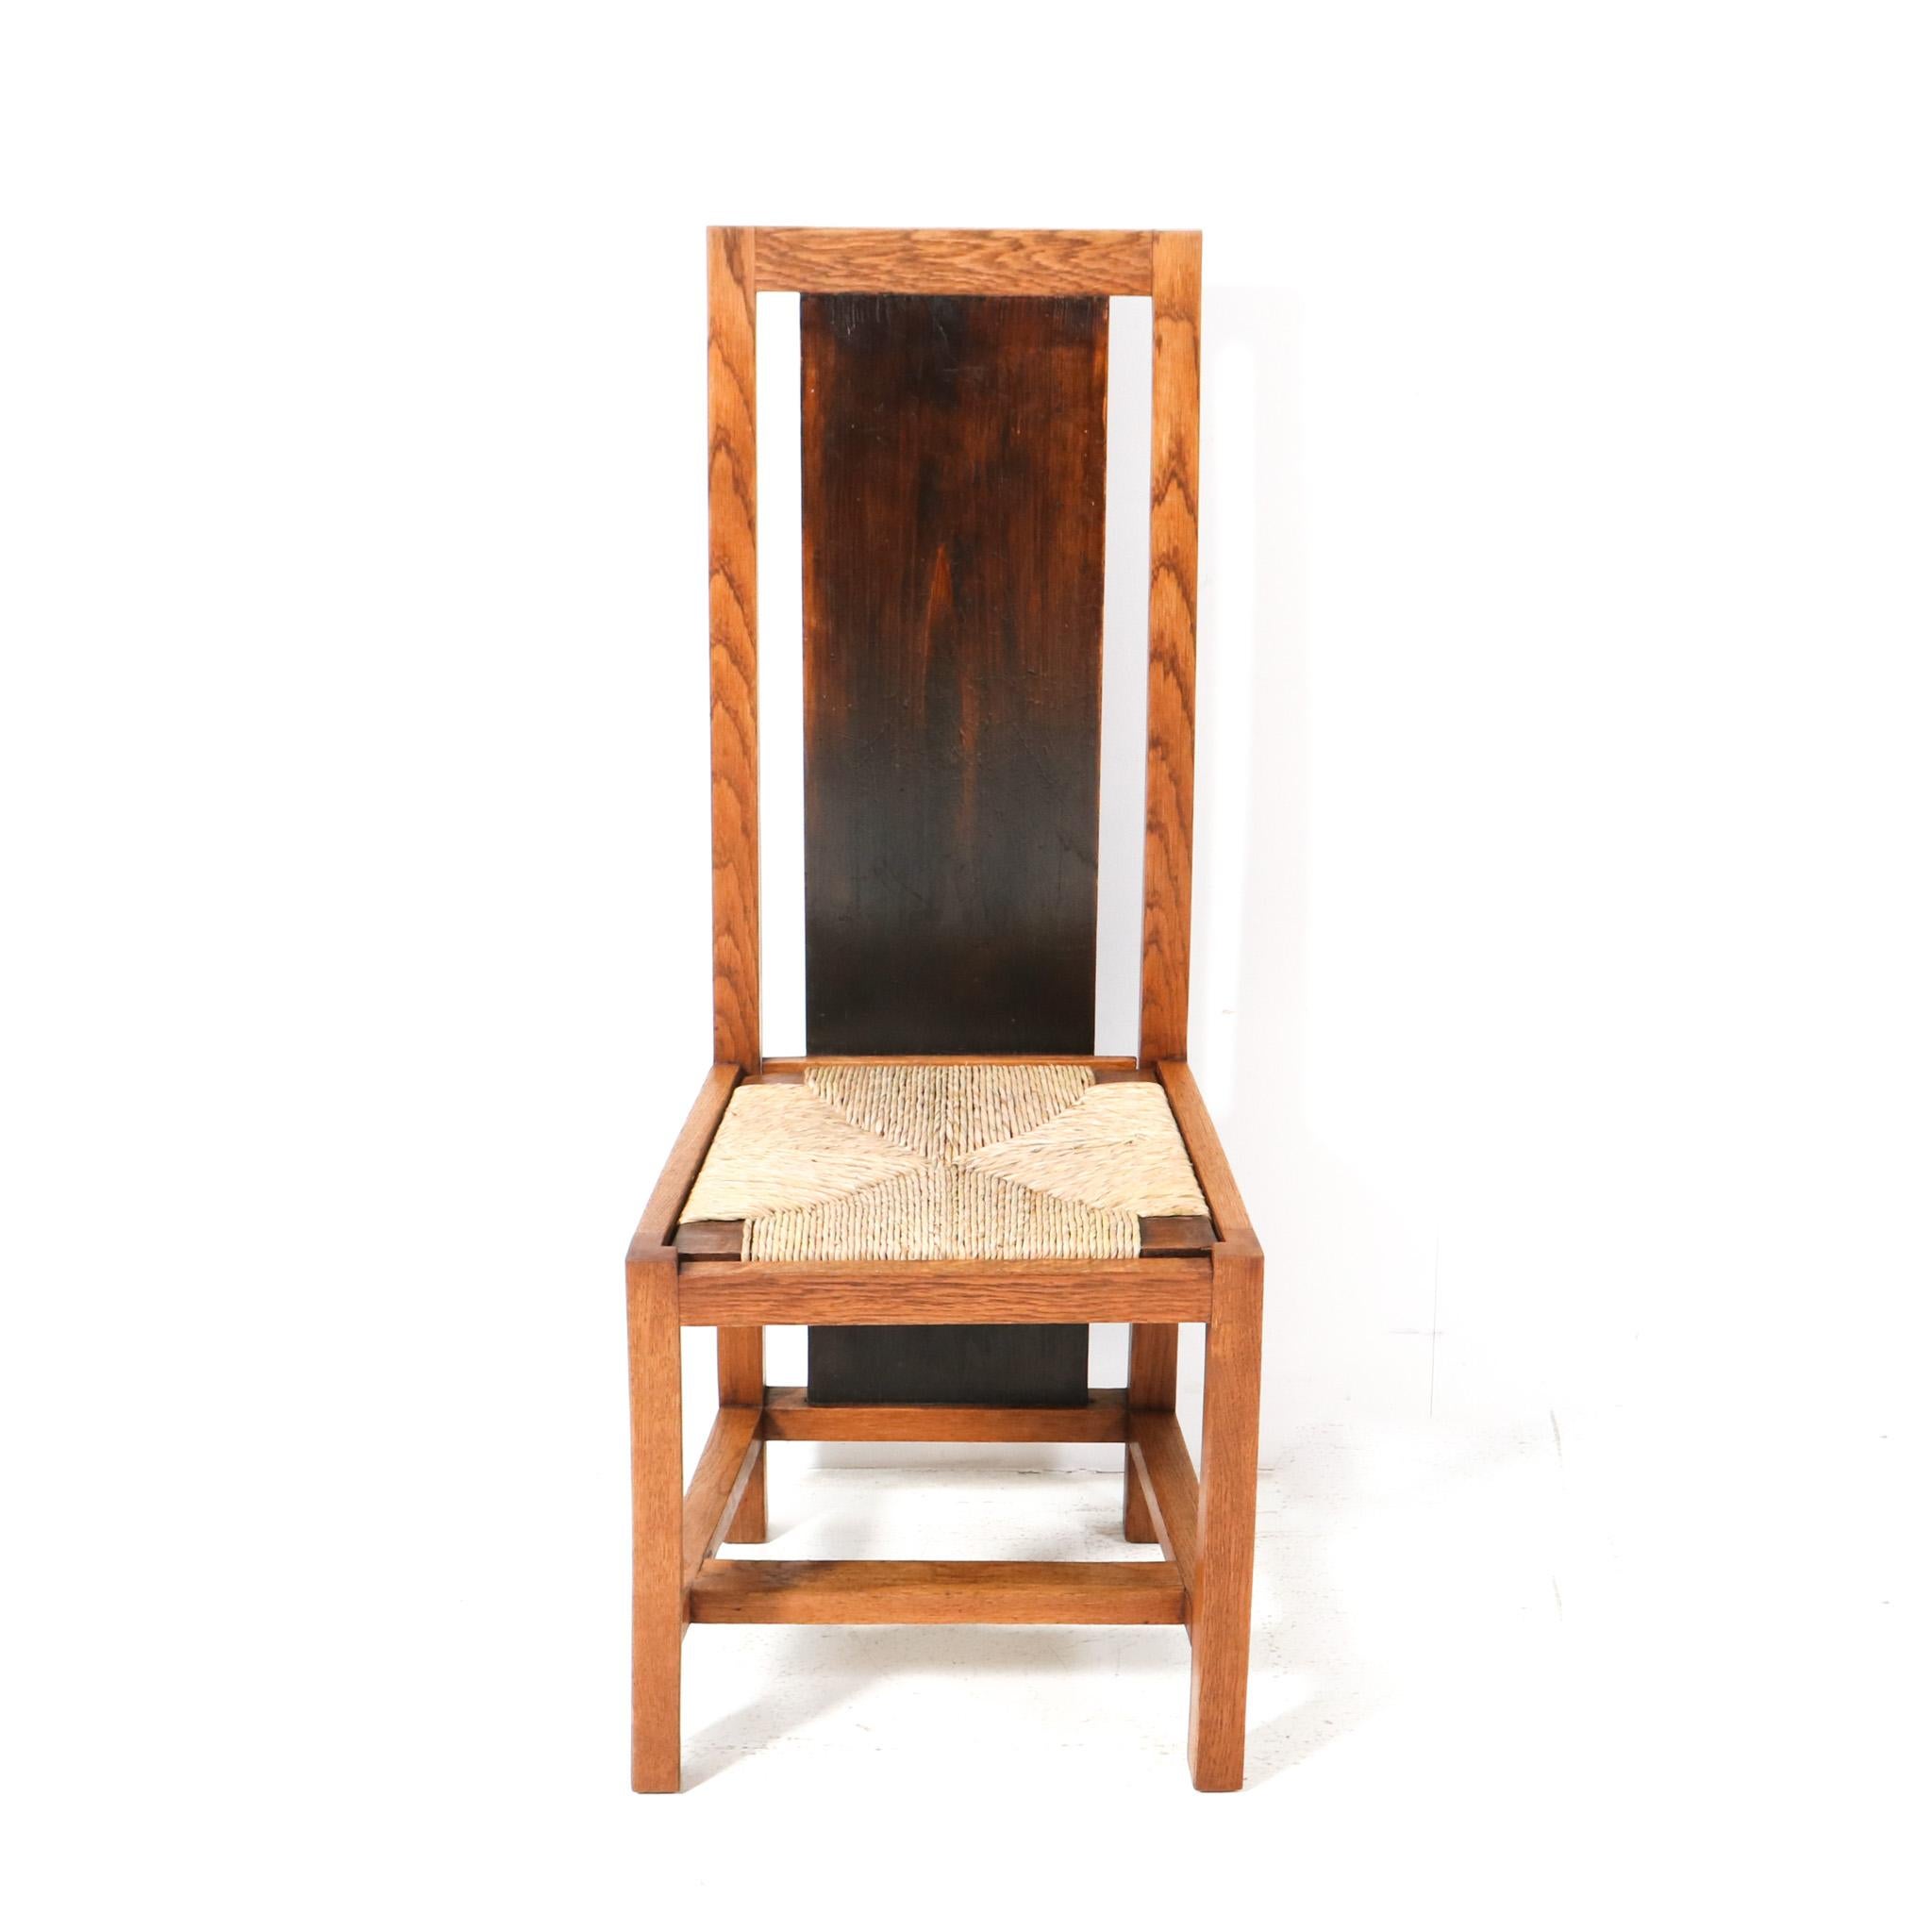 Magnifique et rarissime chaise à dossier haut de style Art déco moderniste.
Design/One.
Un design néerlandais saisissant des années 1920.
Cadre en chêne massif avec dos d'origine teinté foncé.
Le siège du jonc a été renouvelé.
Un véritable